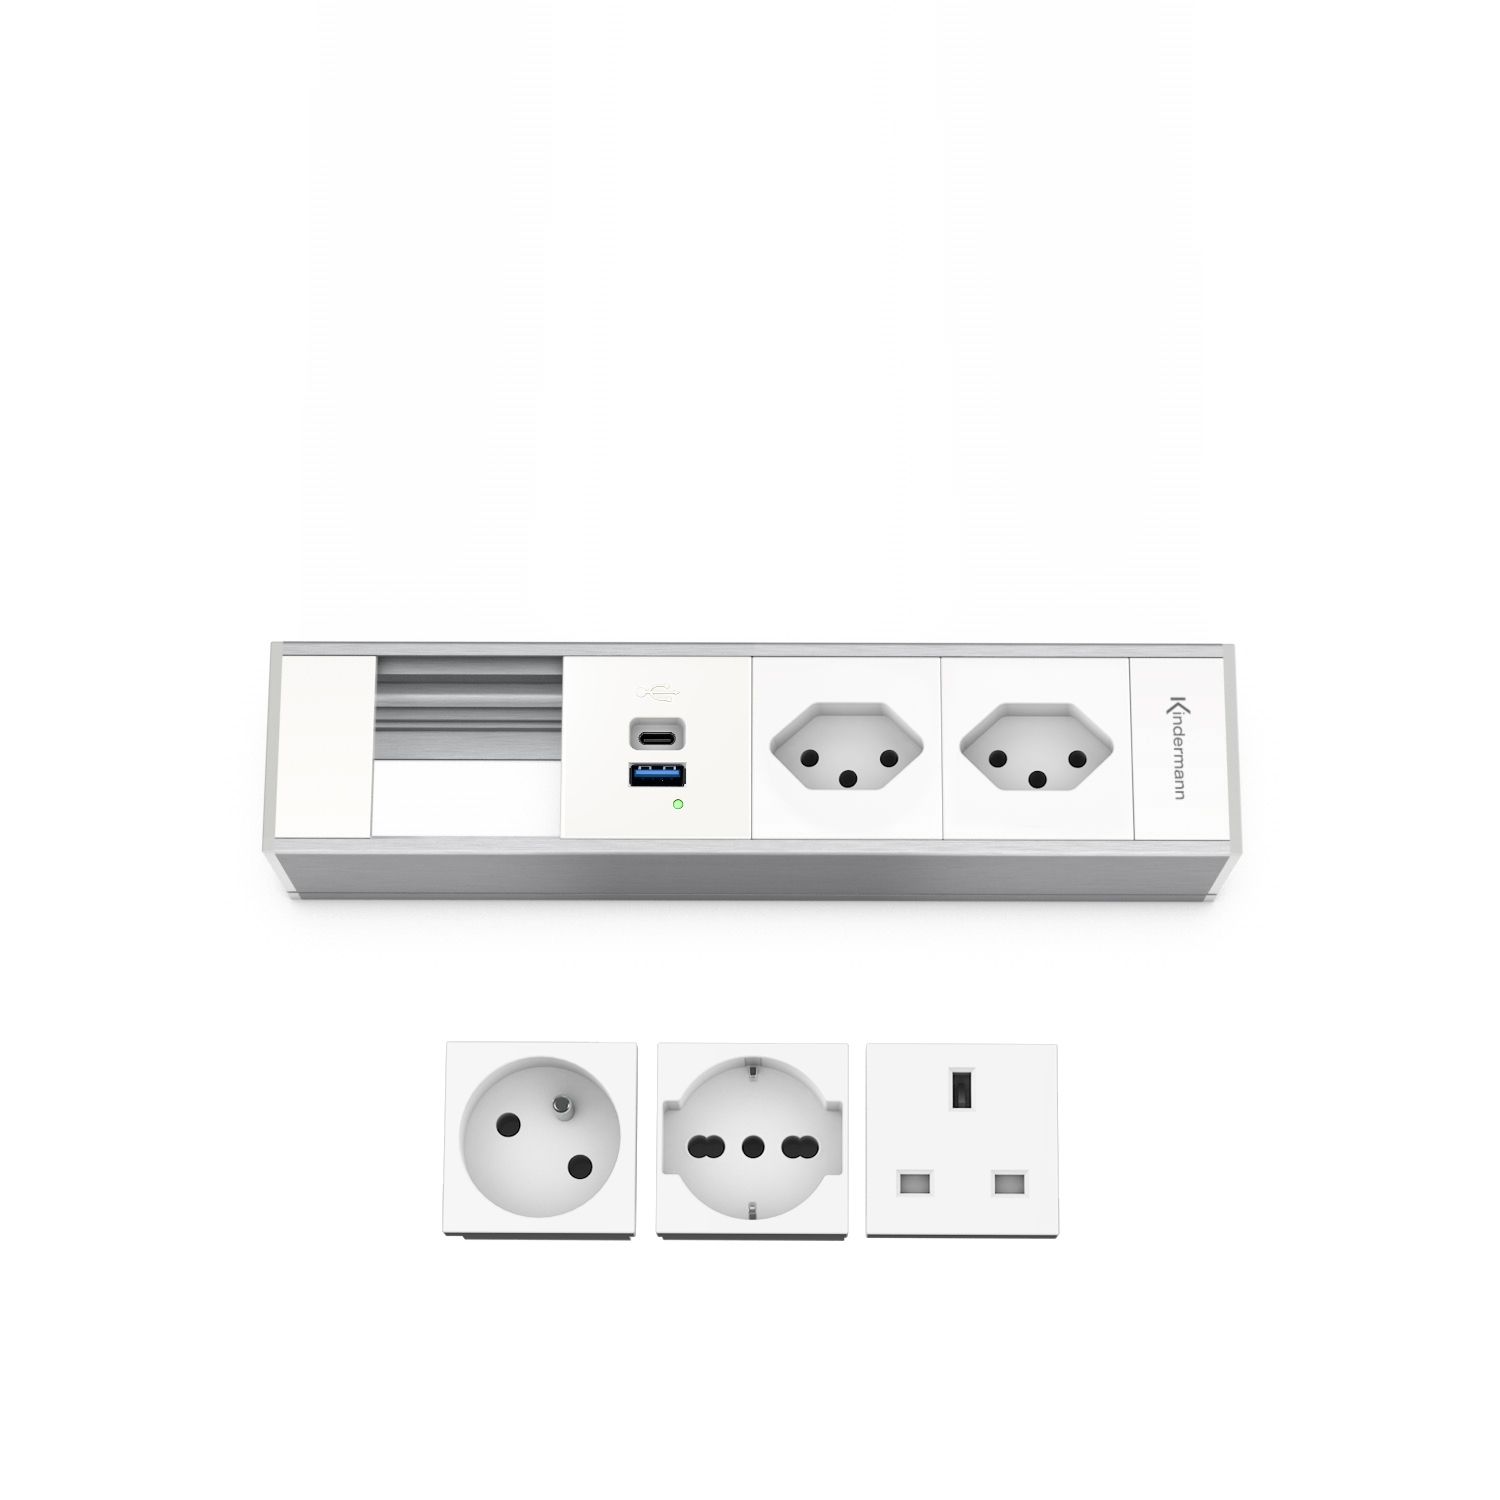 Kindermann Modulträger 4-fach 2xStrom INT - 1x USB-A / 1x USB-C - Tischanschlussfeld - Aluminium natur - eloxiert